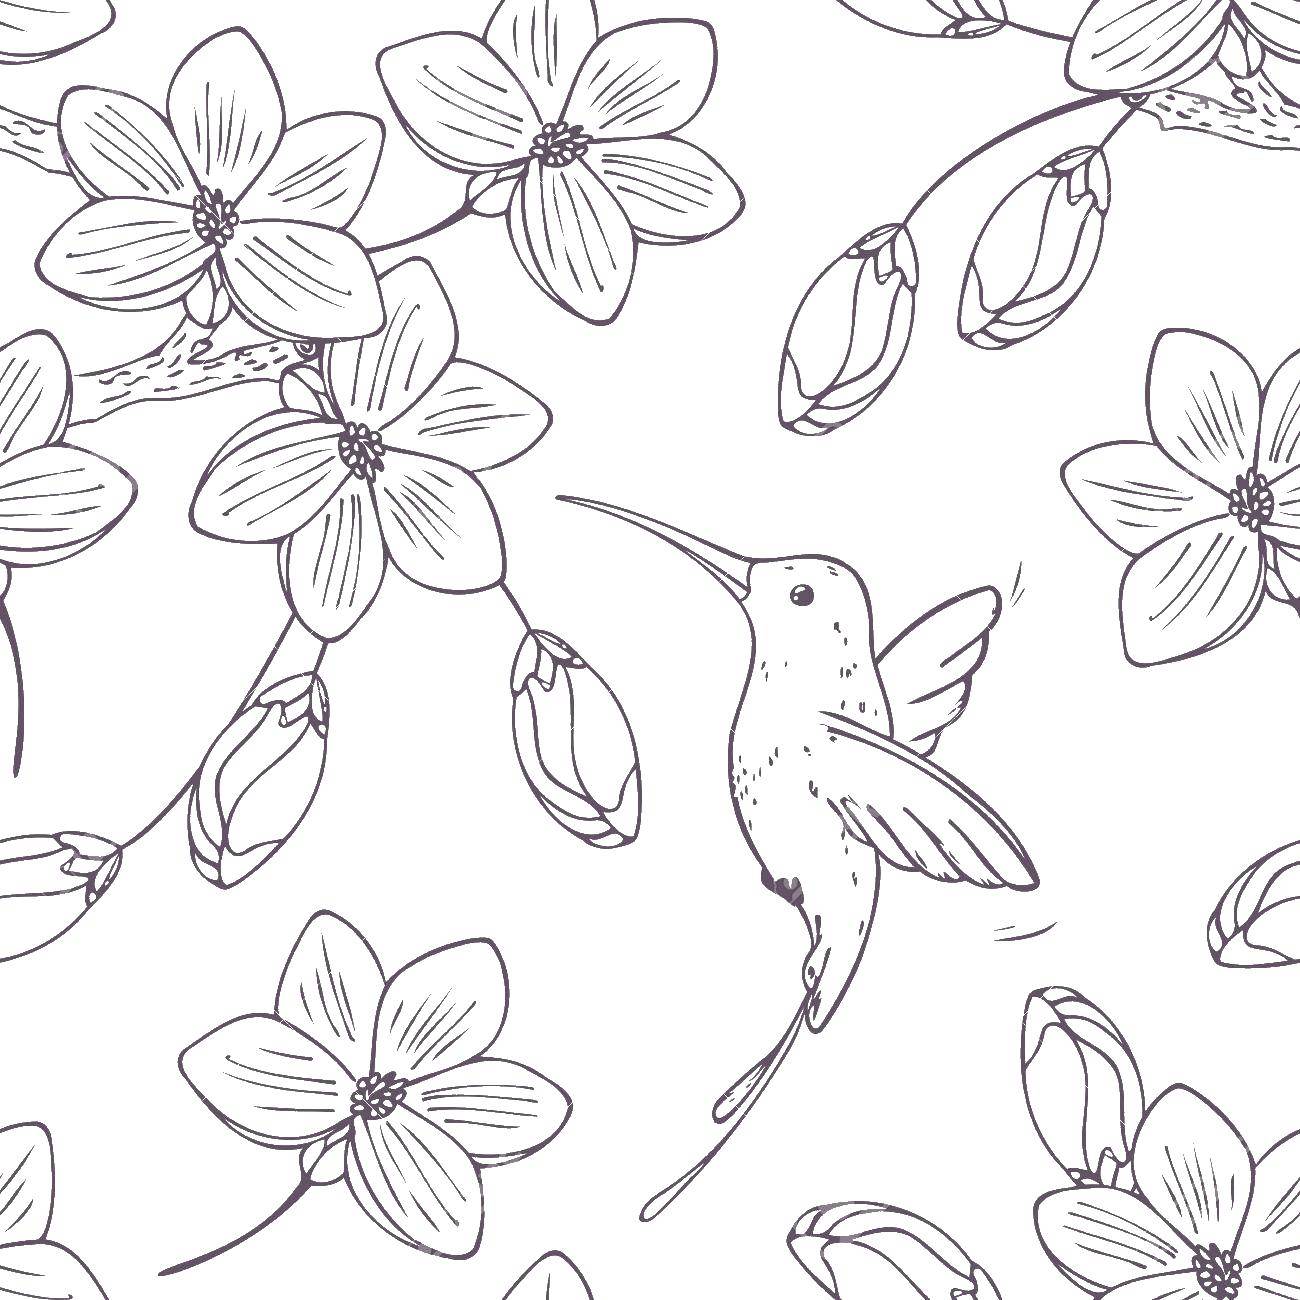 Раскраска с изображением птицы колибри, цветов и клюва (птицы, колибри, цветы, клюв)